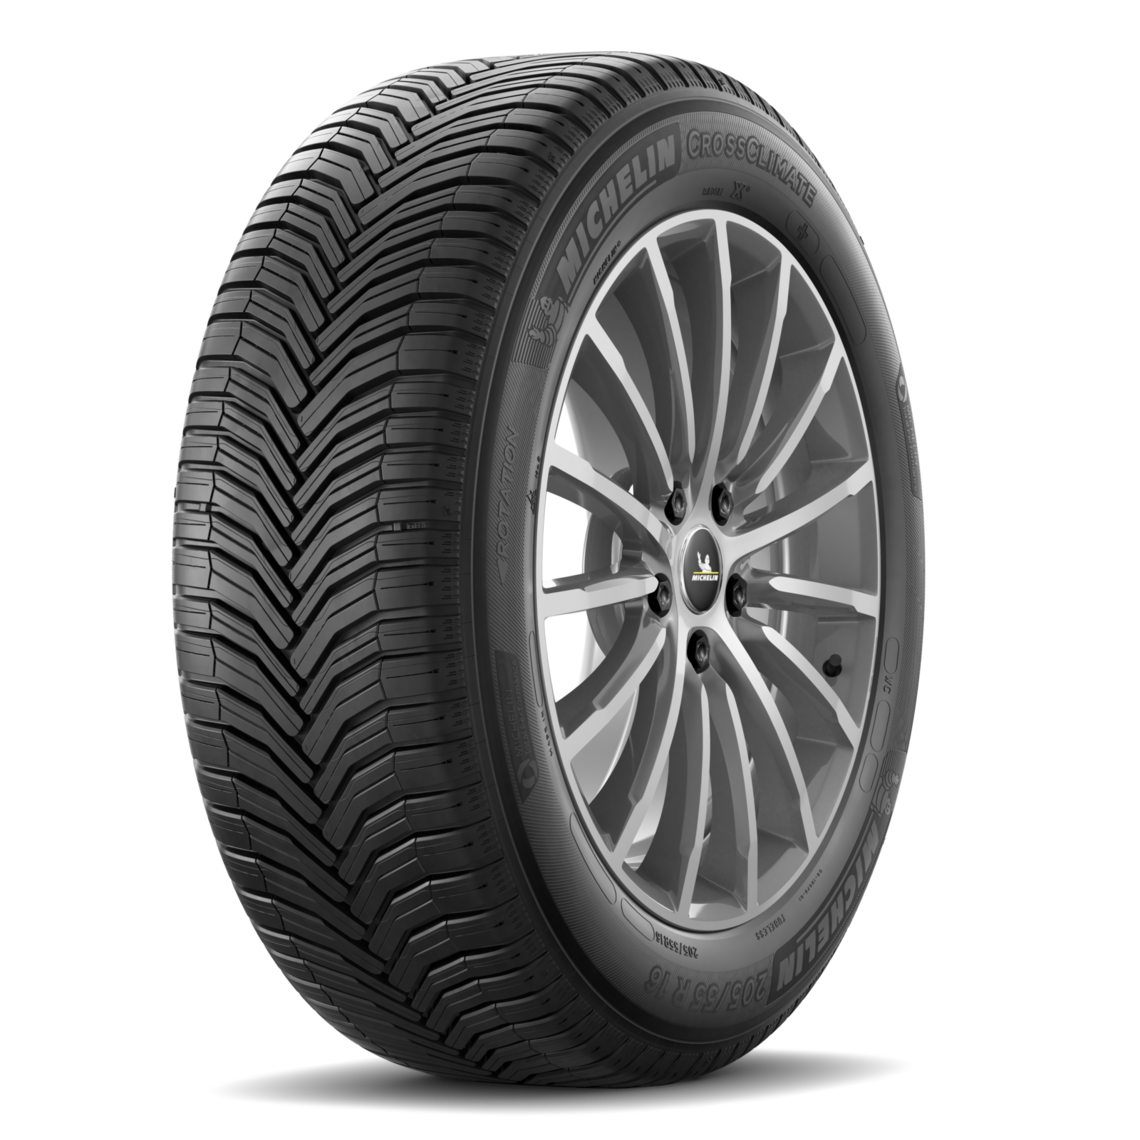 Gomme Nuove Michelin 255/50 R19 103T CROSSCLIMATE 2 SUV M+S pneumatici nuovi All Season